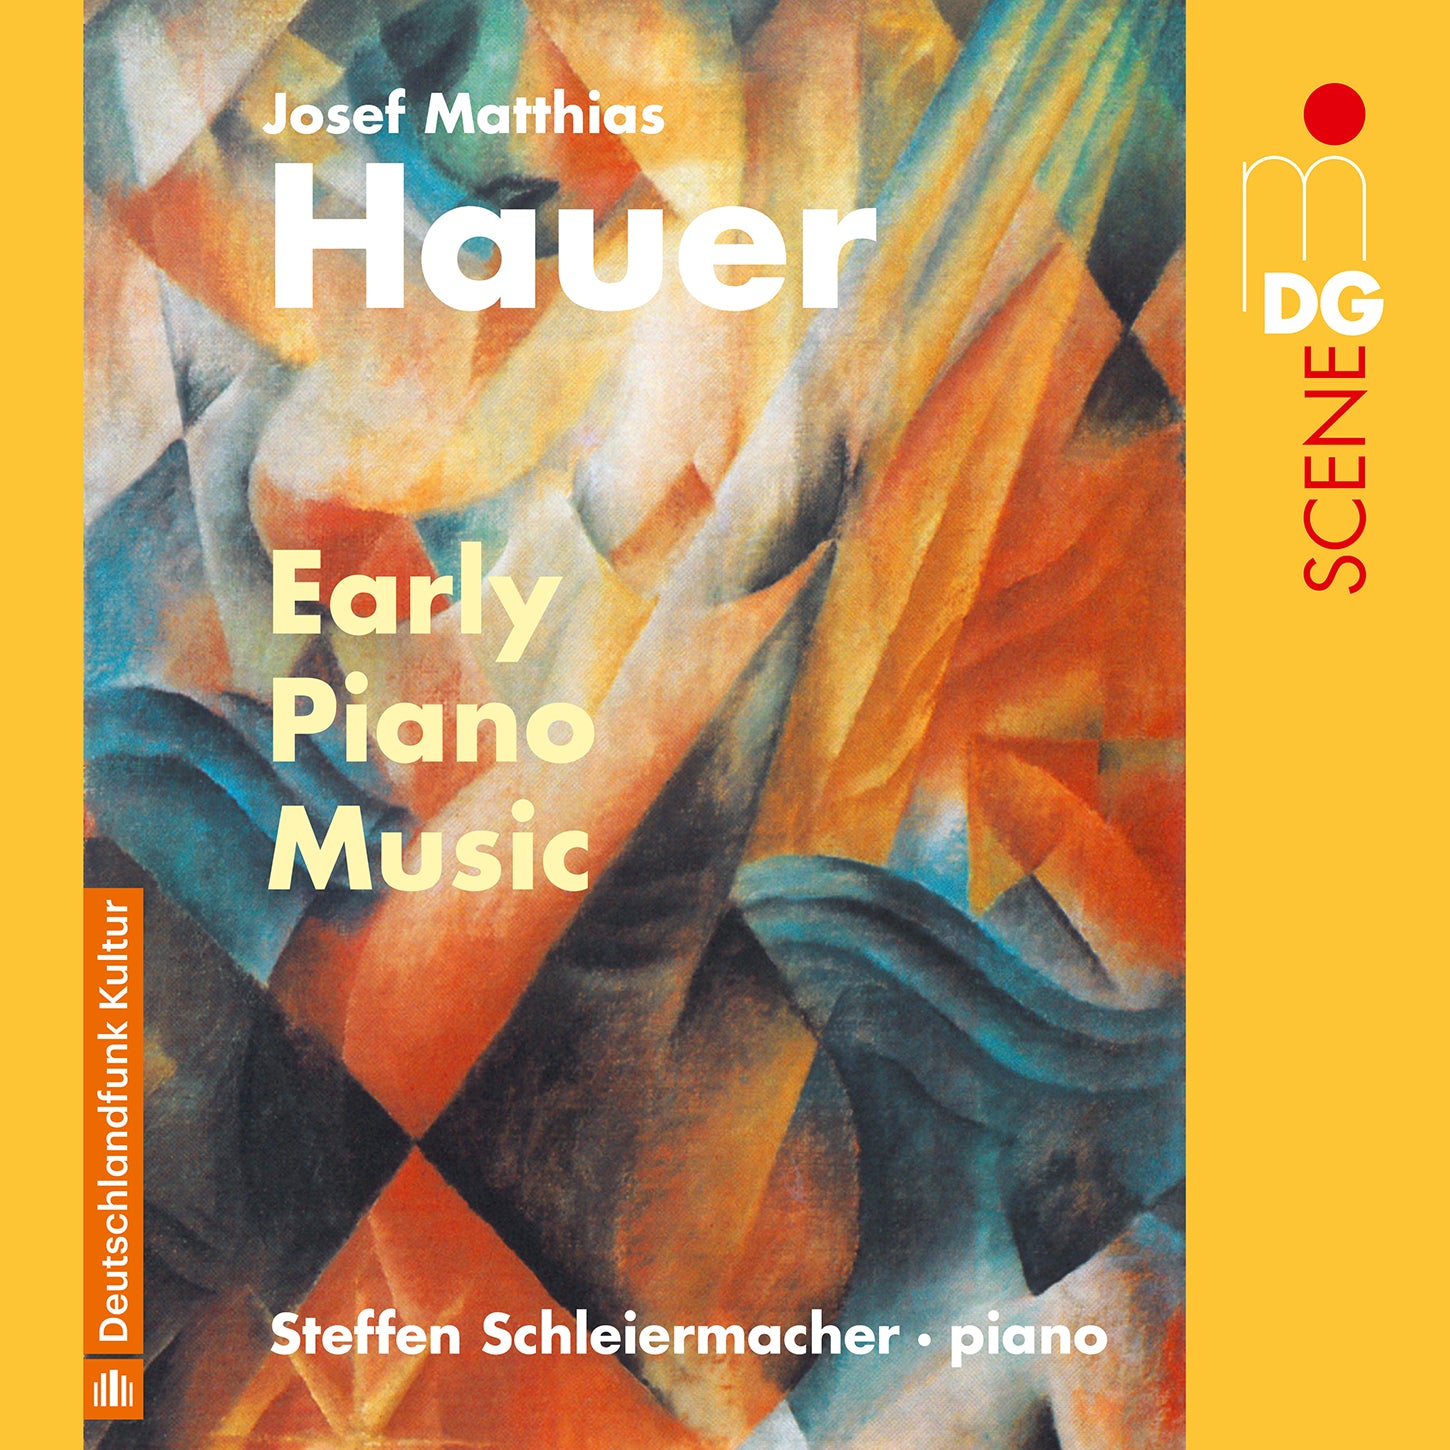 J.M. Hauer: Early Piano Music / Steffen Schleiermacher